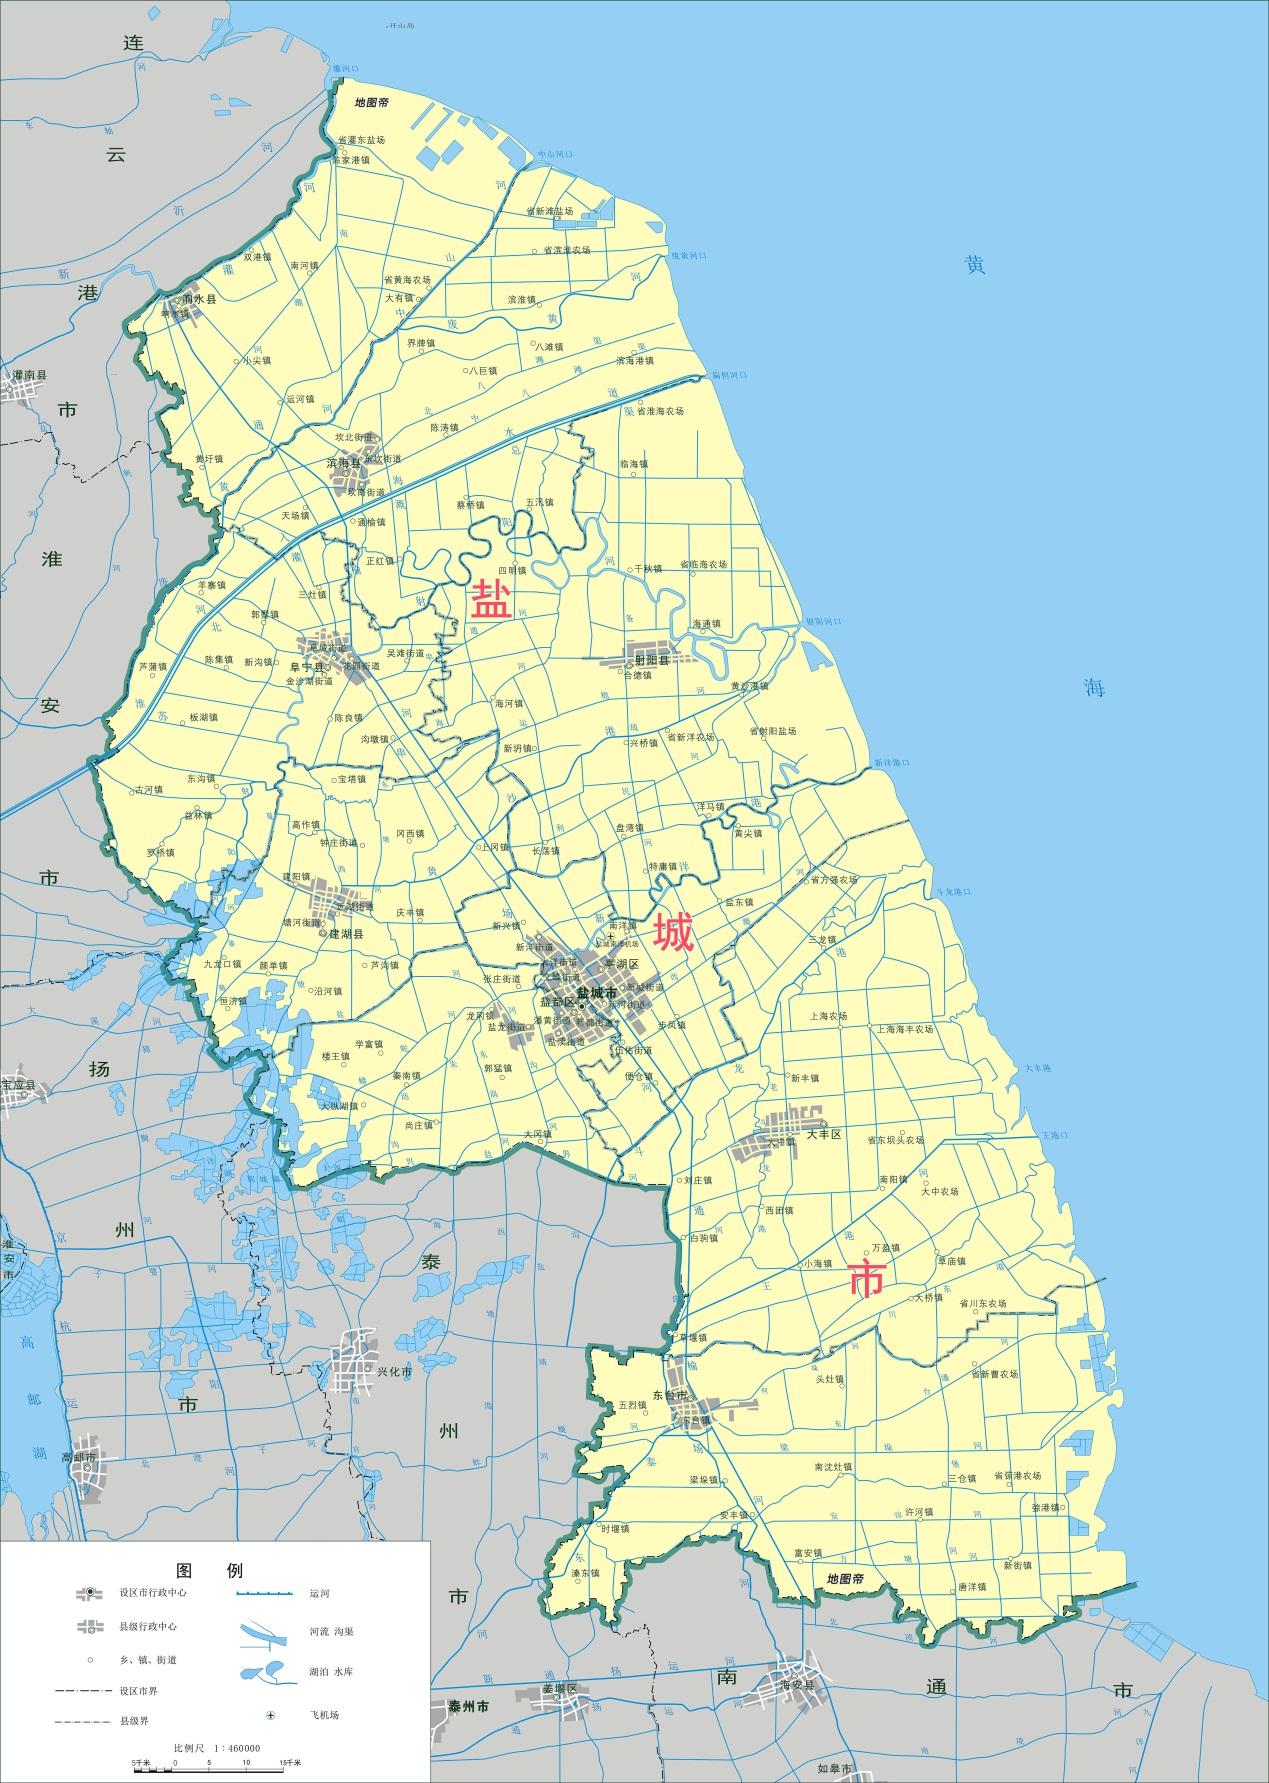 上海在江苏盐城有块飞地,面积是徐汇区的5倍多